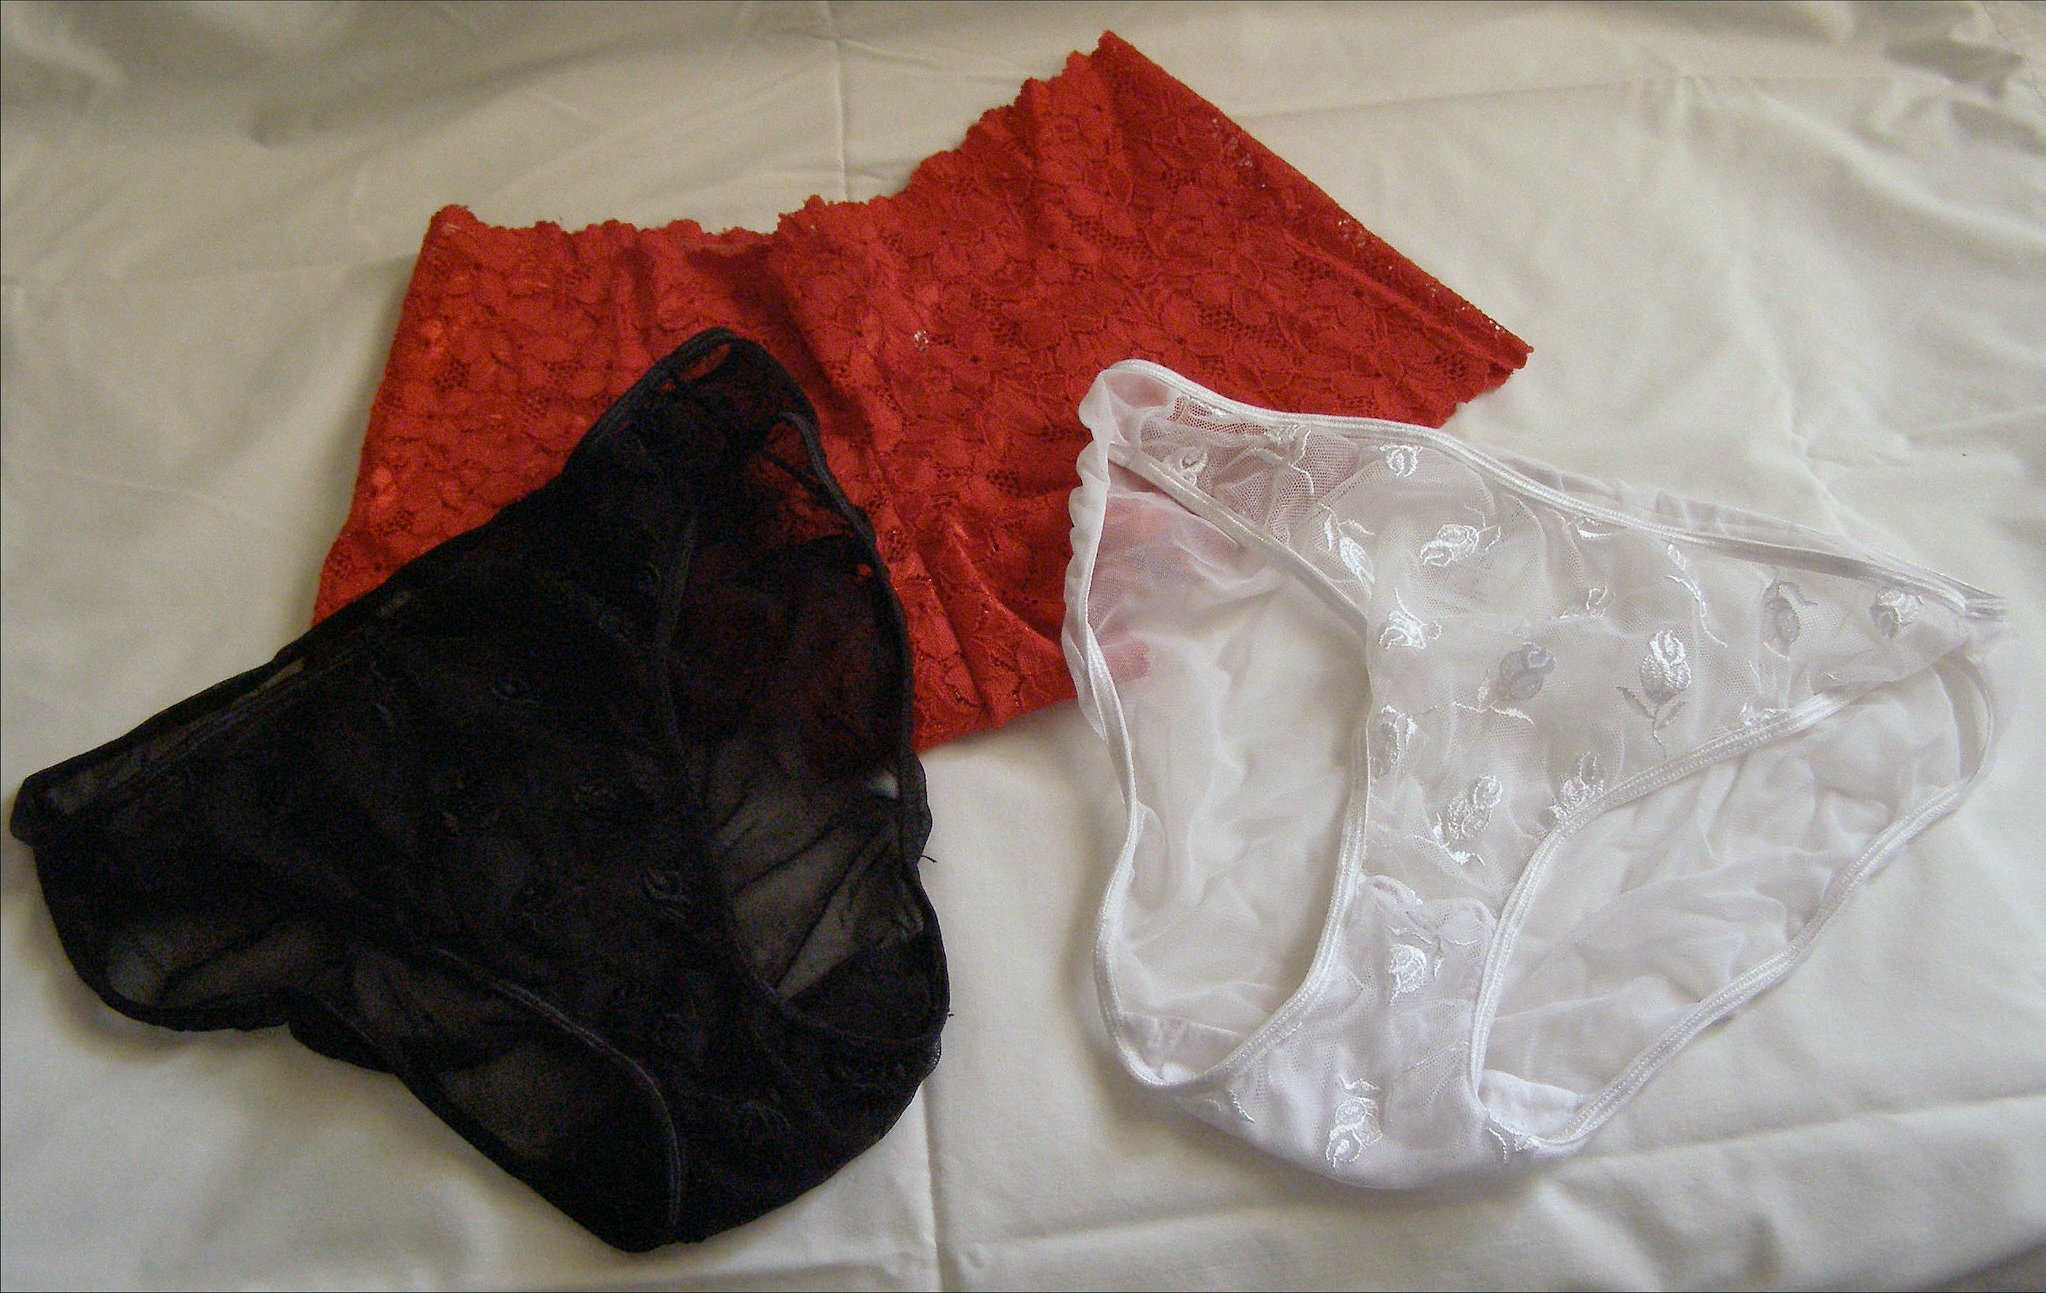 Unmentionables: Panties, Bras, Slips, Corsets, Garters, Camisoles